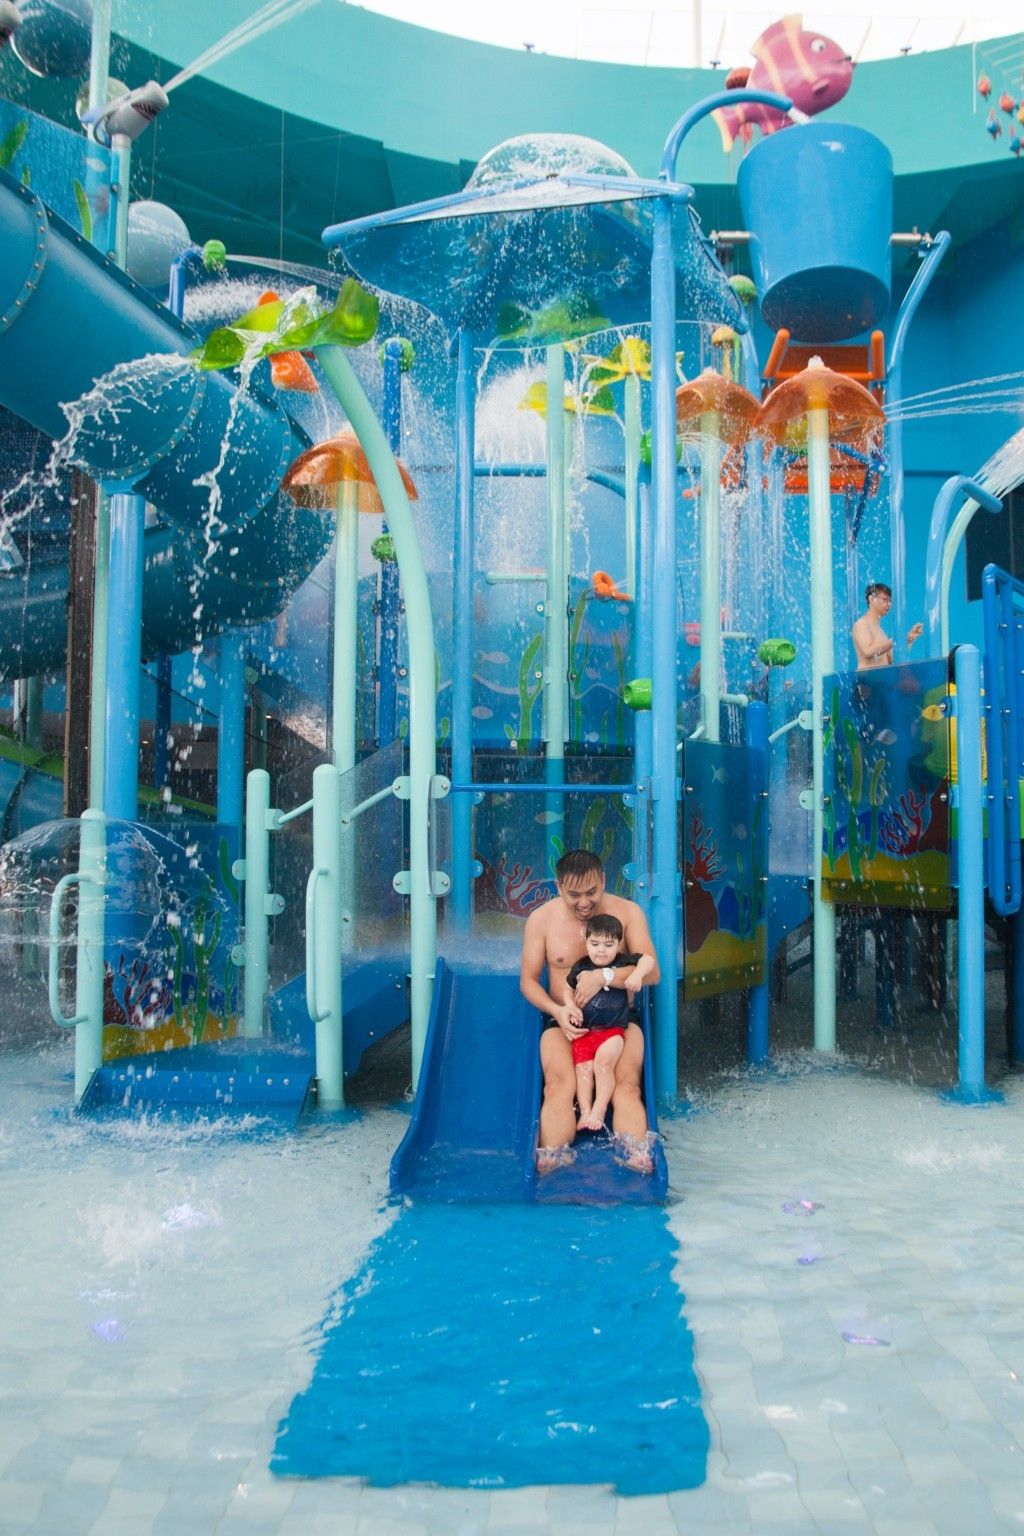 Splash@Kidz Amaze Indoor Water Playground small slide